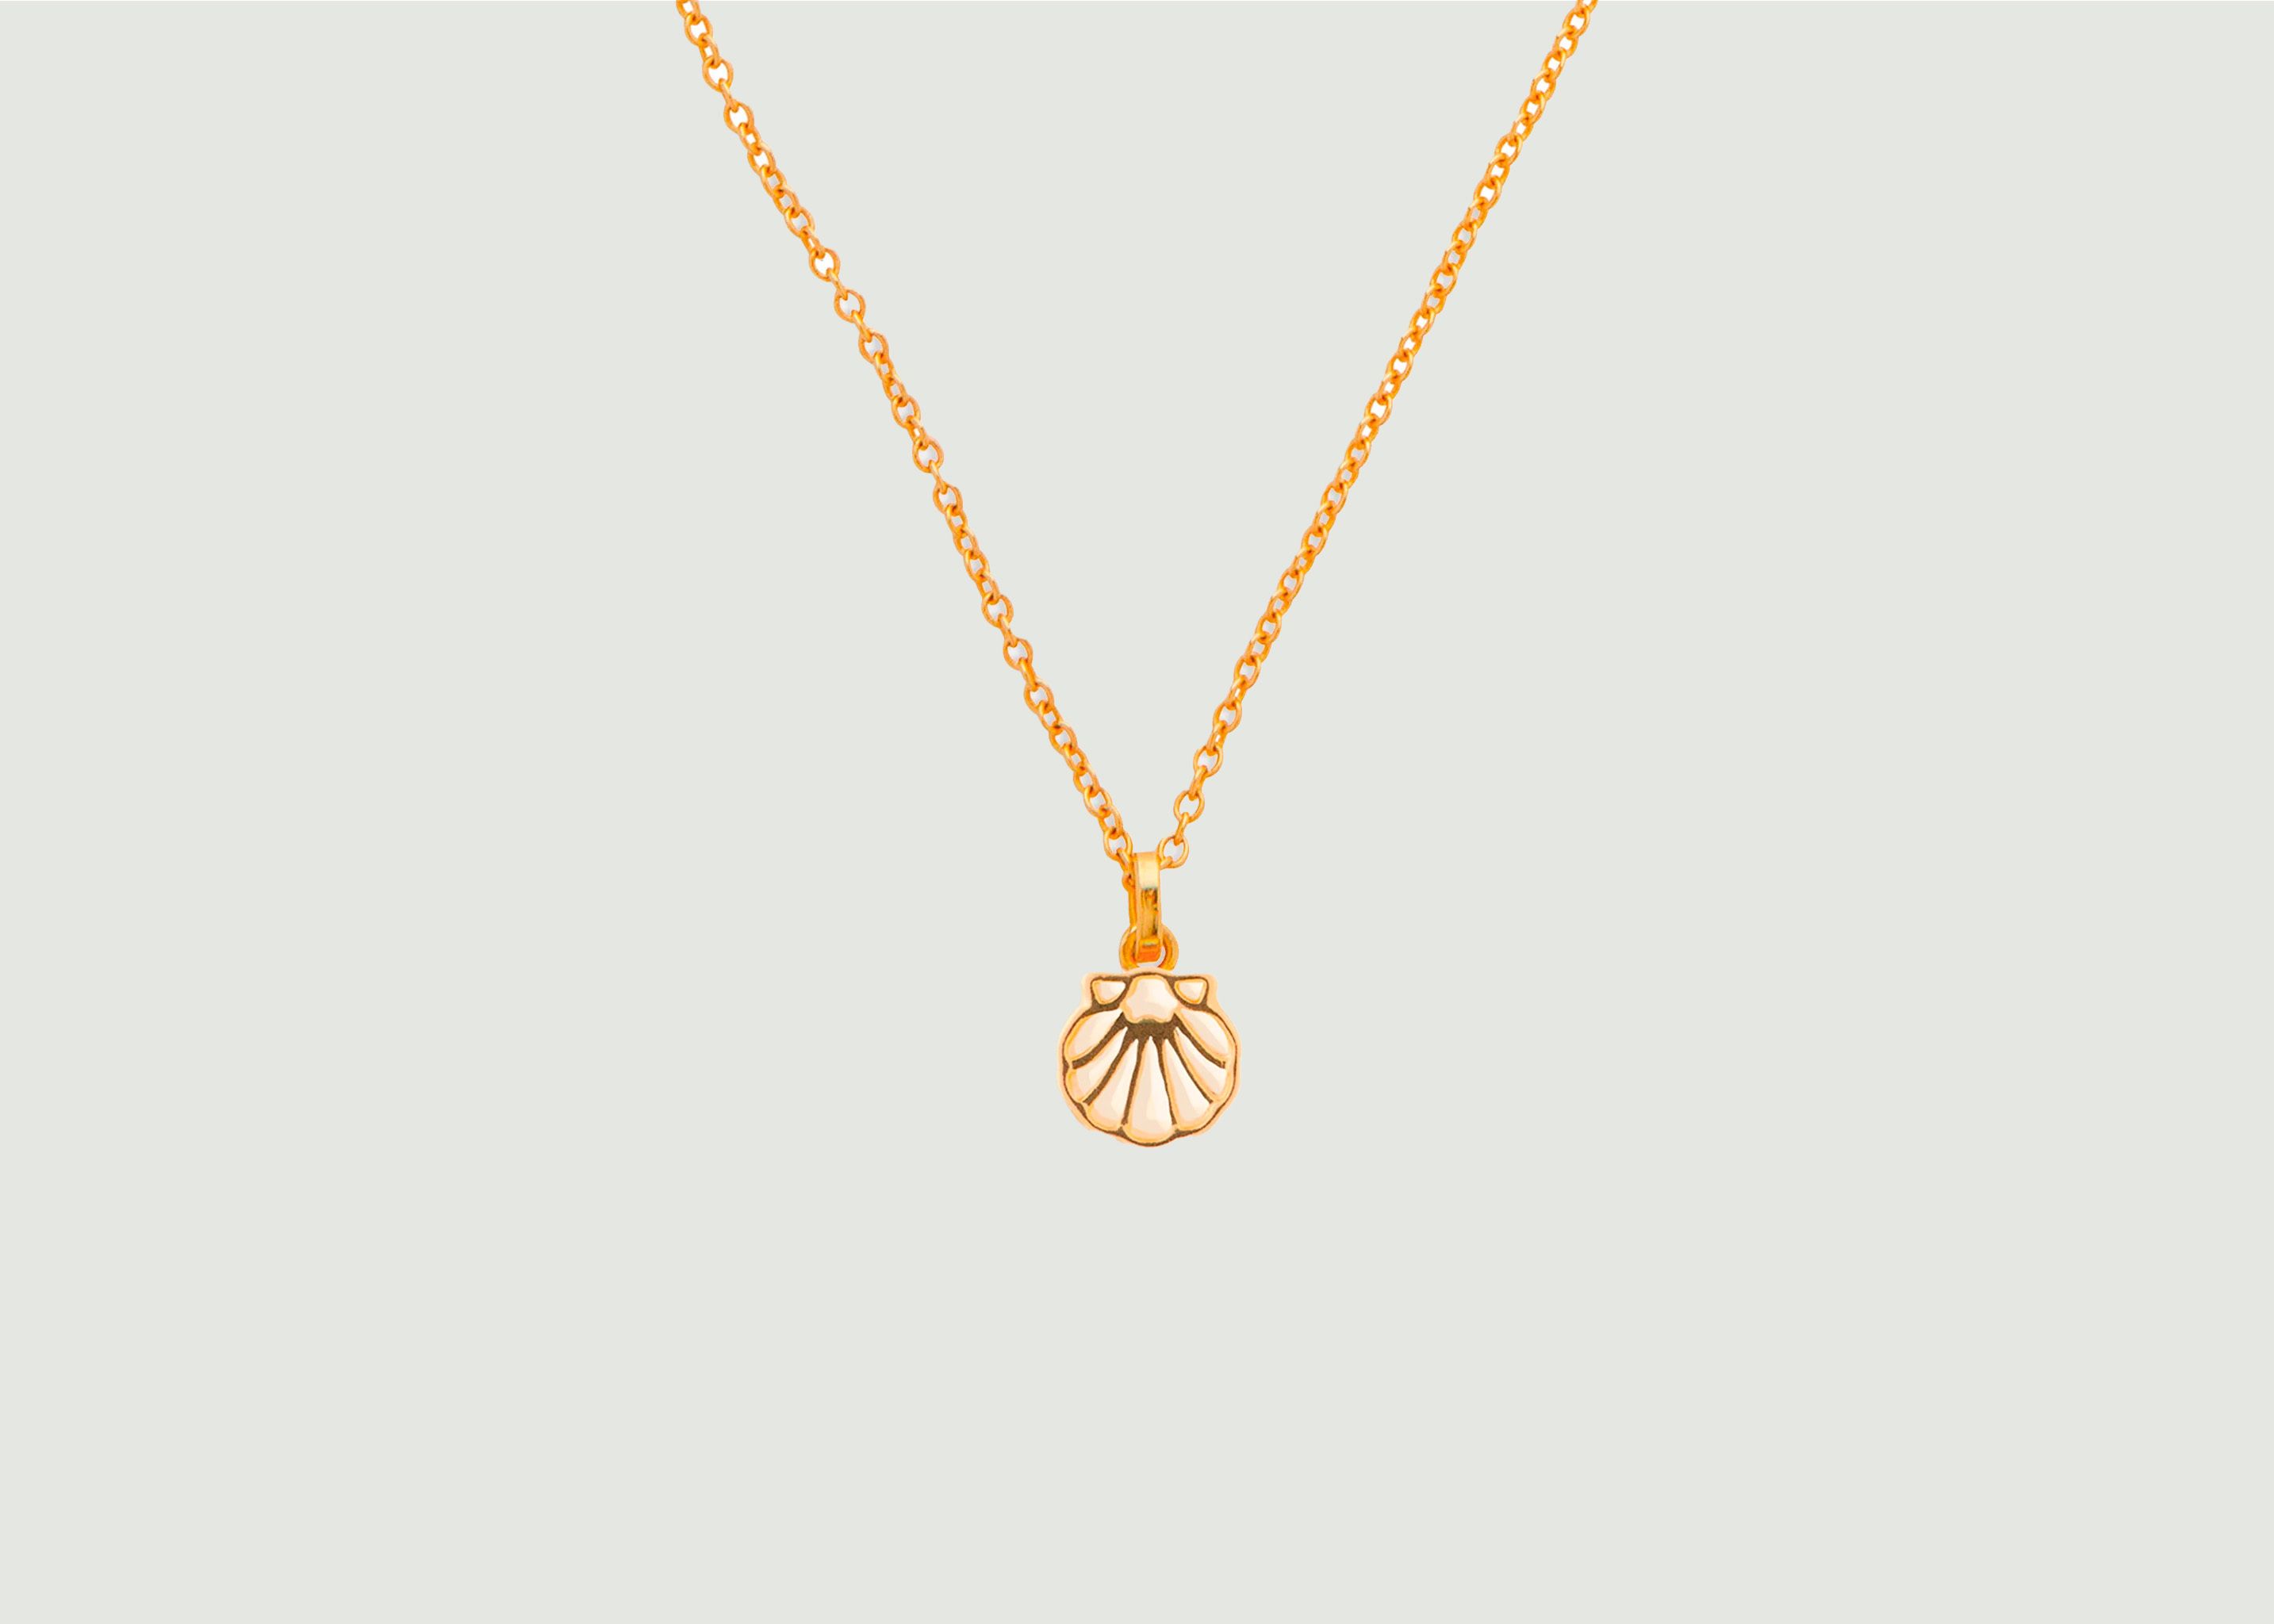 Shell Necklace with Skinny Chain - Wilhelmina Garcia